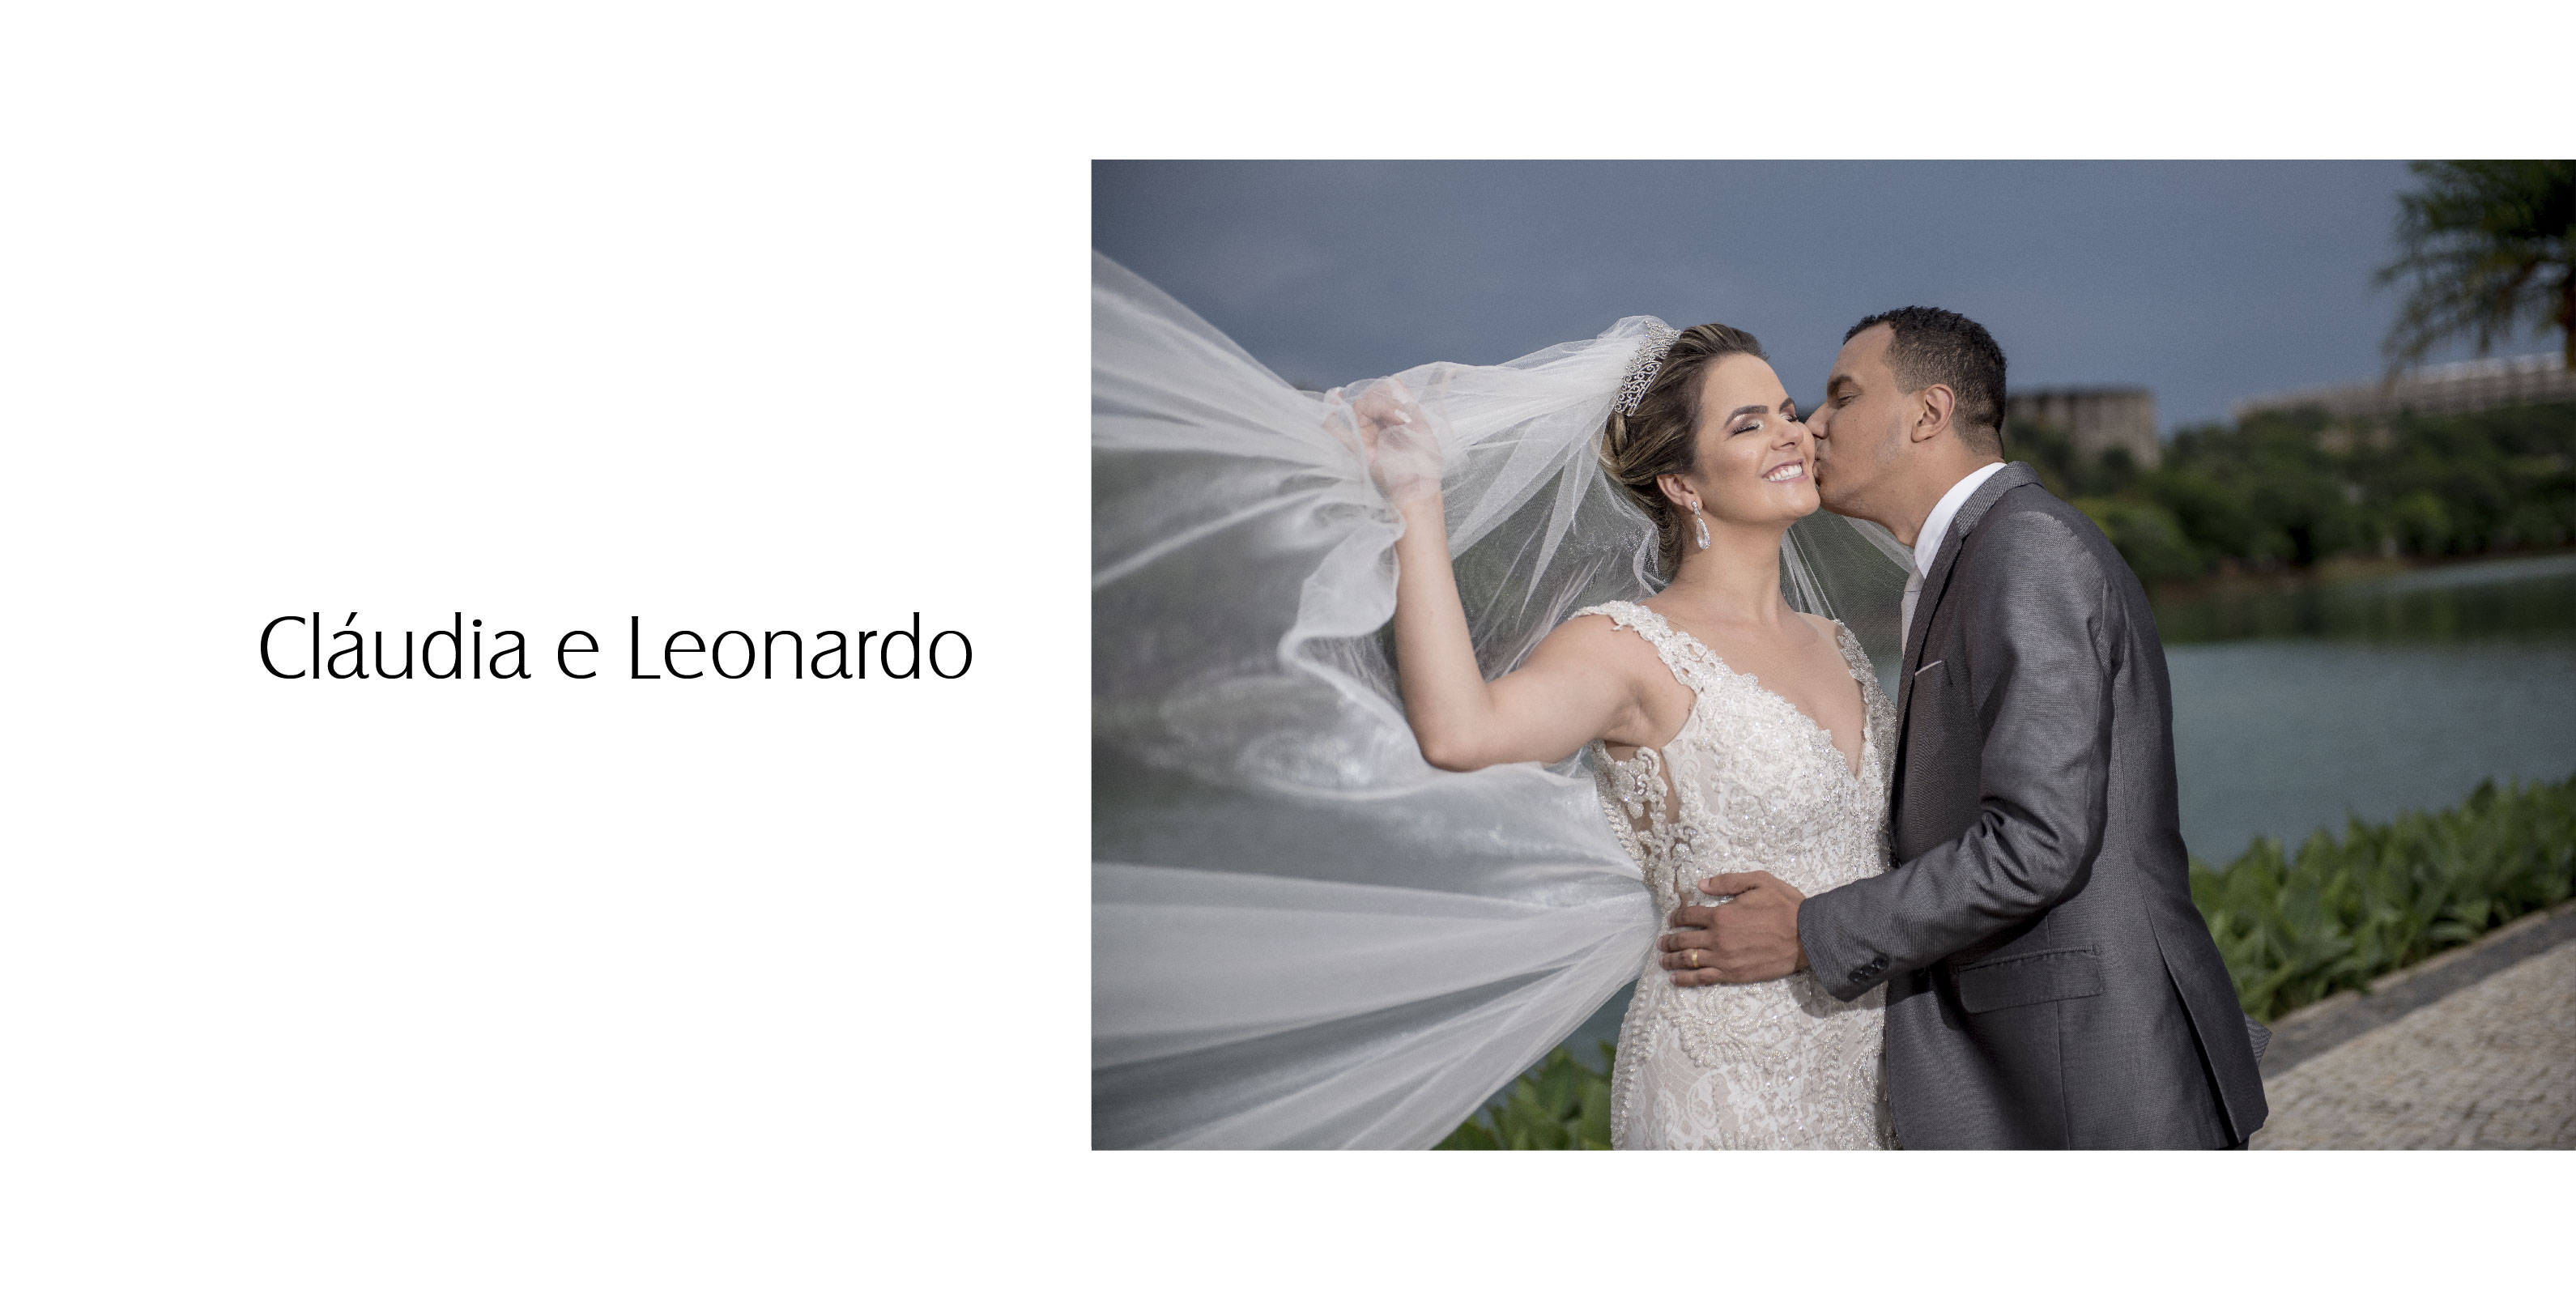 Casamento em Divinópolis - Cláudia e Leonardo - Zephora Alta Costura - Foto Henrique Faria